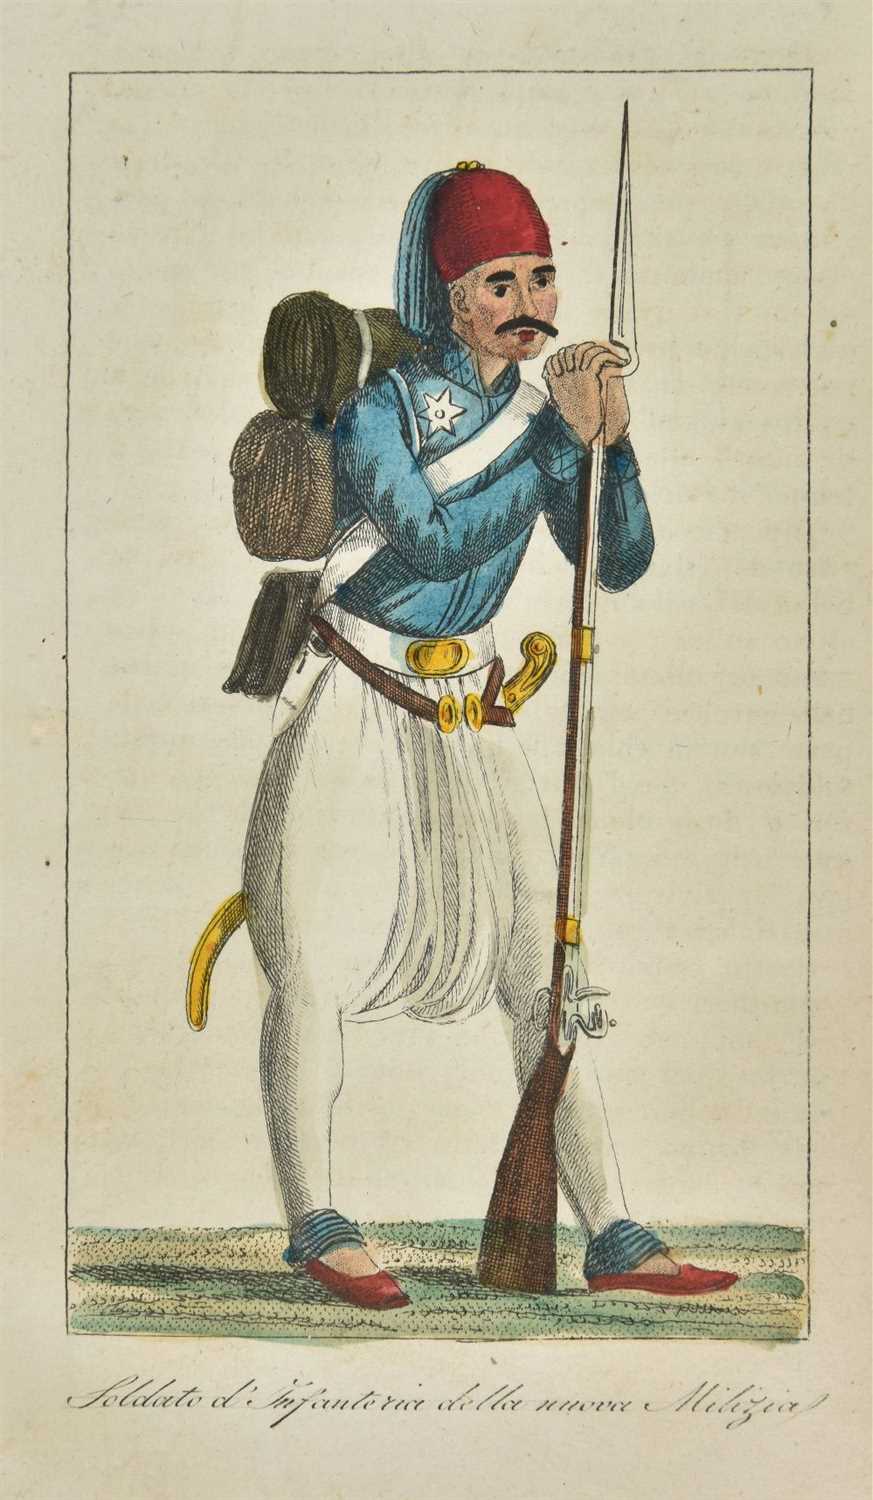 Lot 24 - Margaroli (Giovanni Battista).  La Turchia ovvero l'impero Ottomano, 1st edition, Milan, 1829